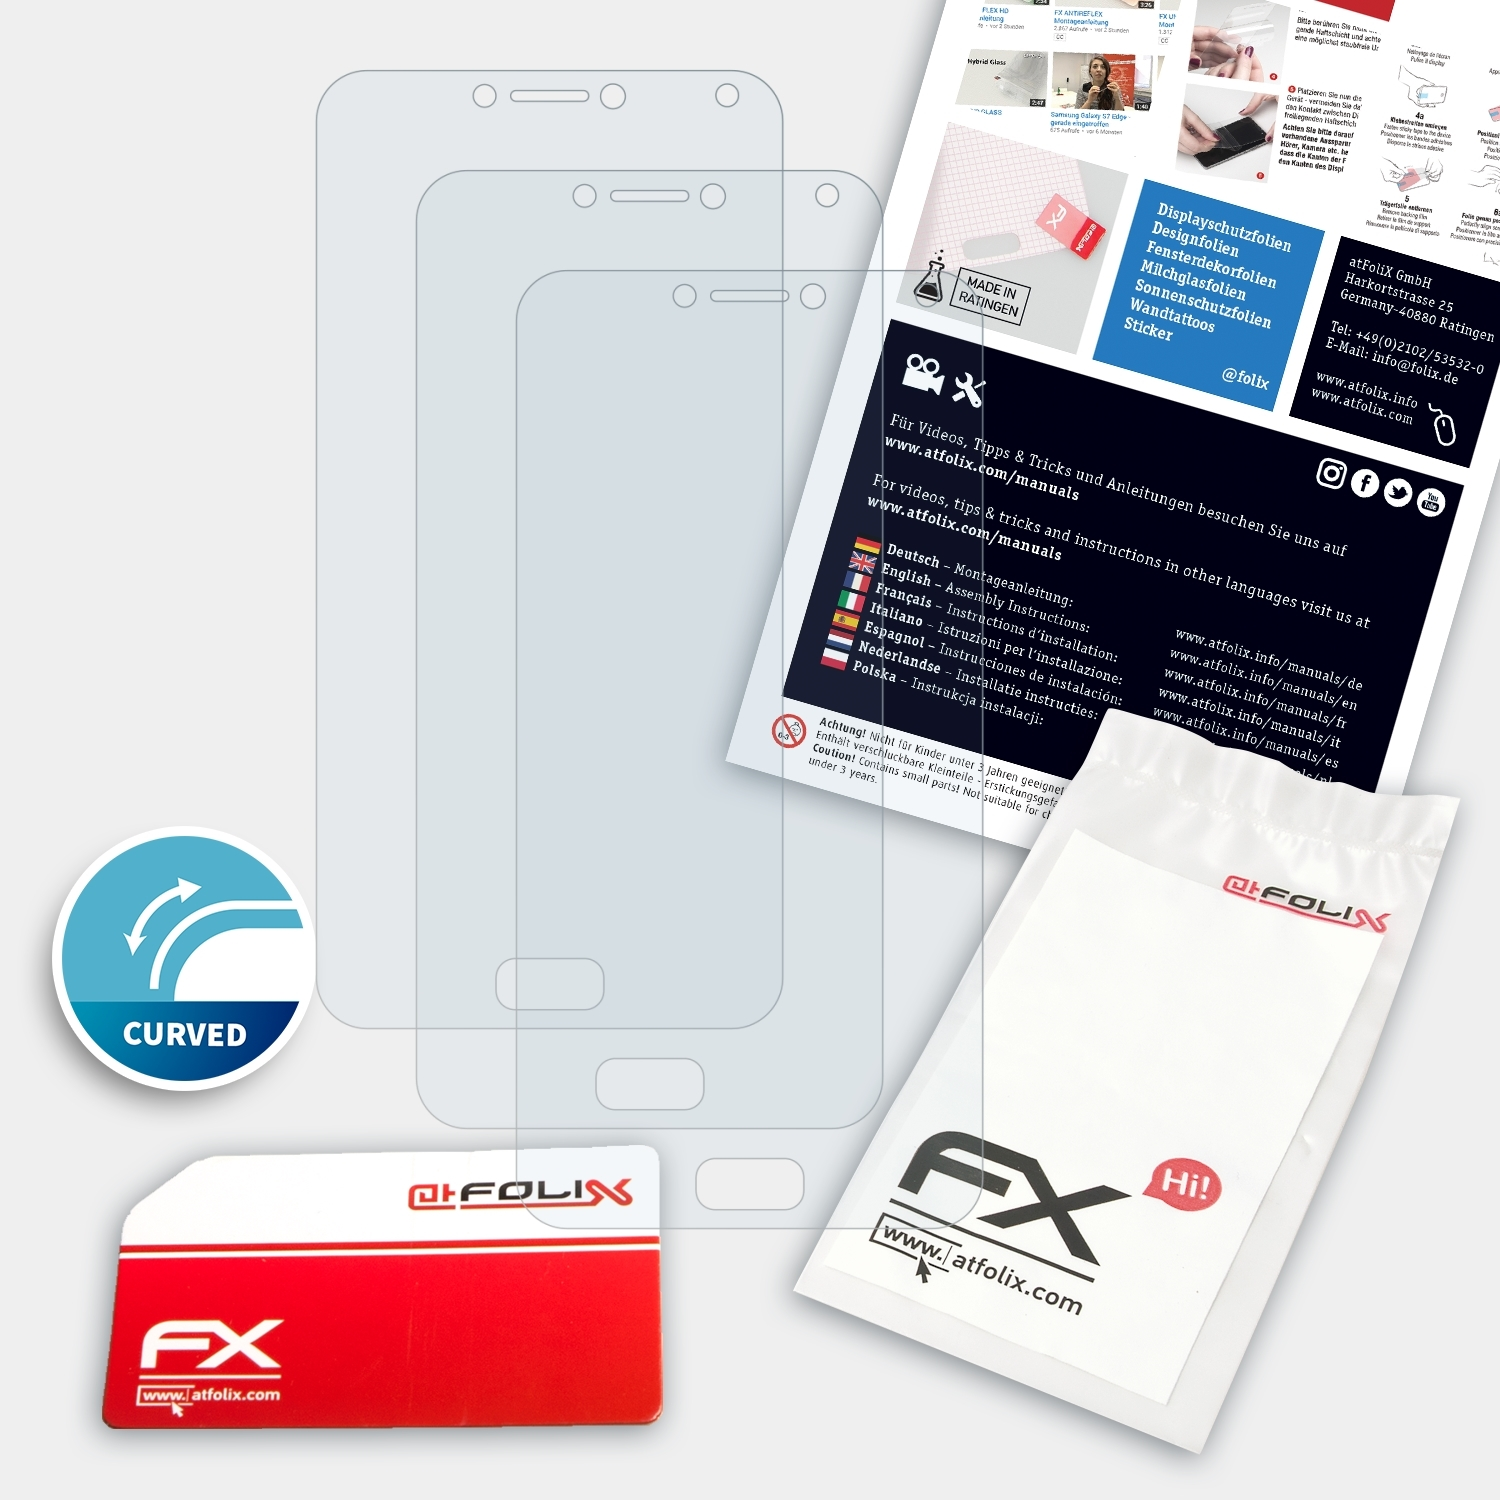 ATFOLIX 3x FX-ActiFleX Asus Max 4 (ZC554KL)) Pro Displayschutz(für ZenFone